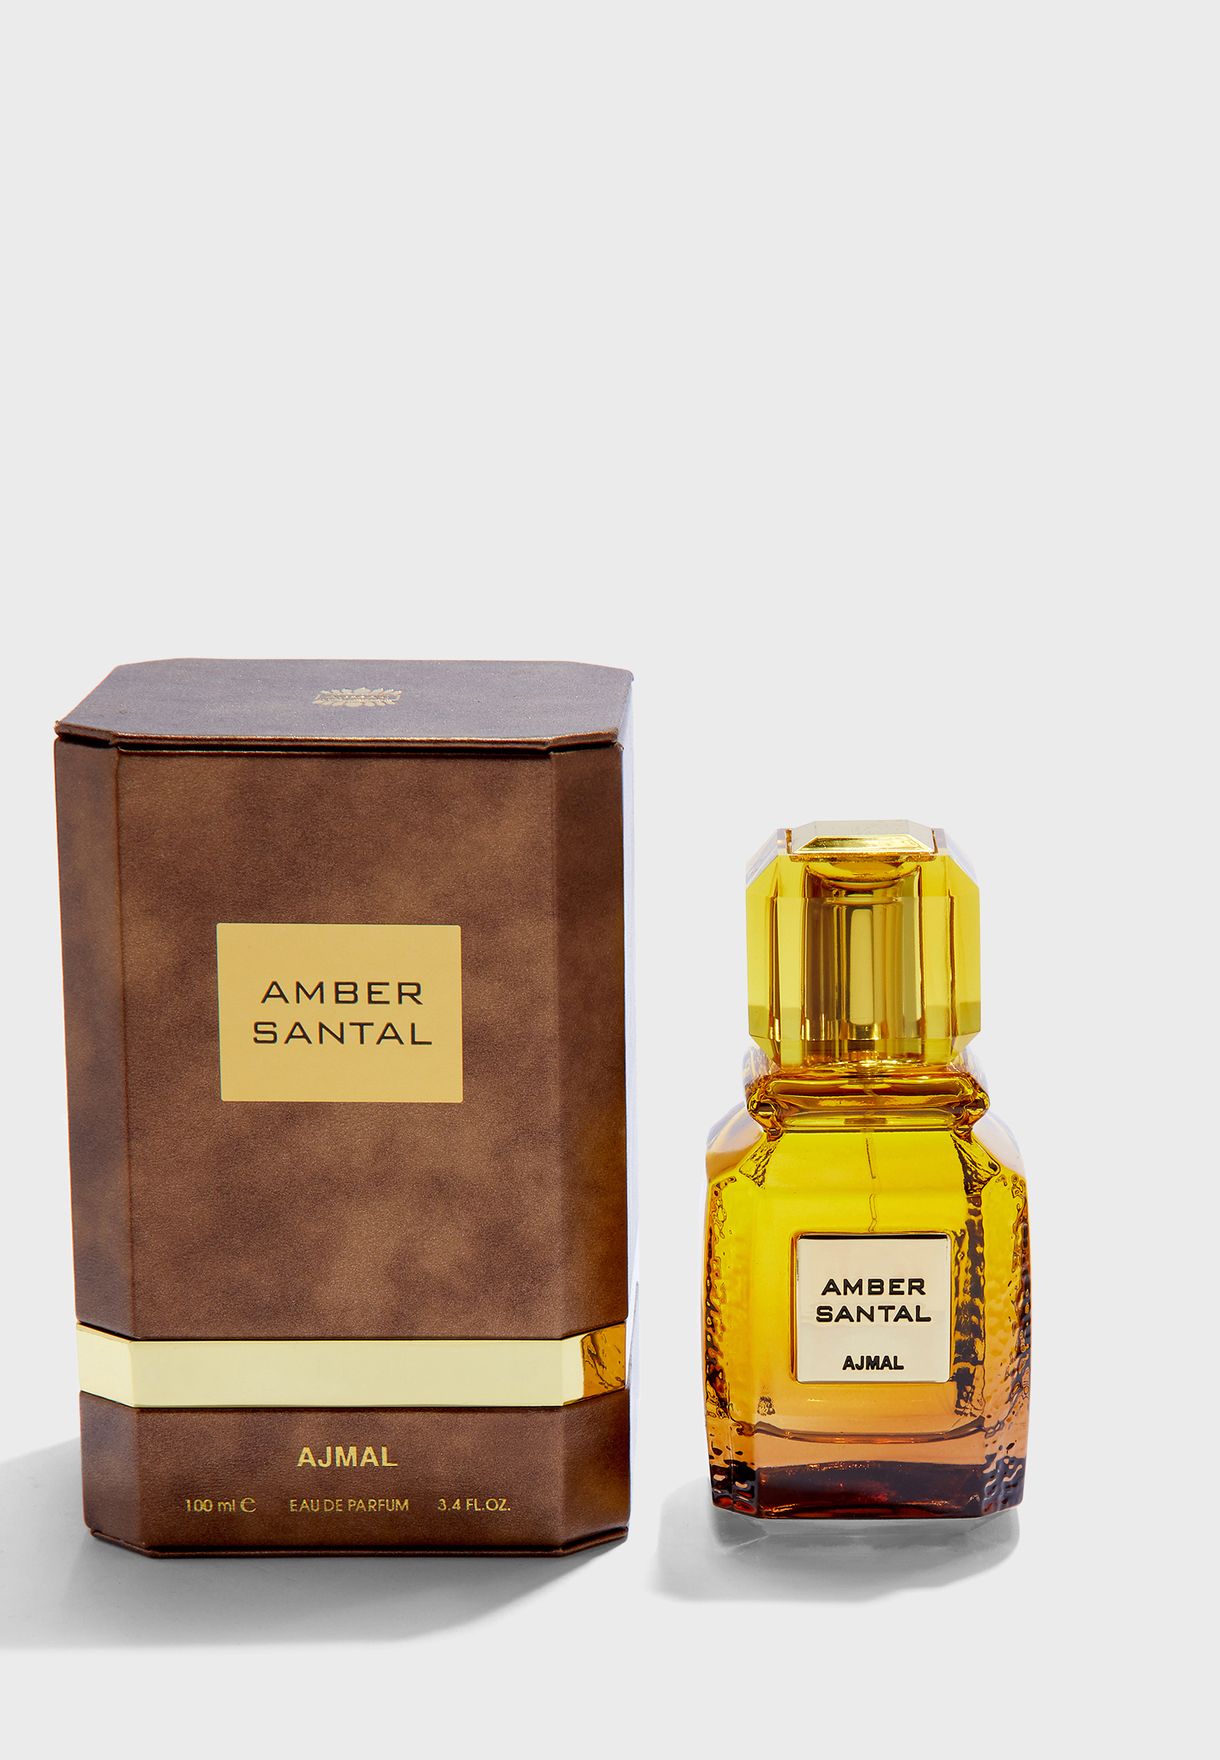 Amber santal parfum